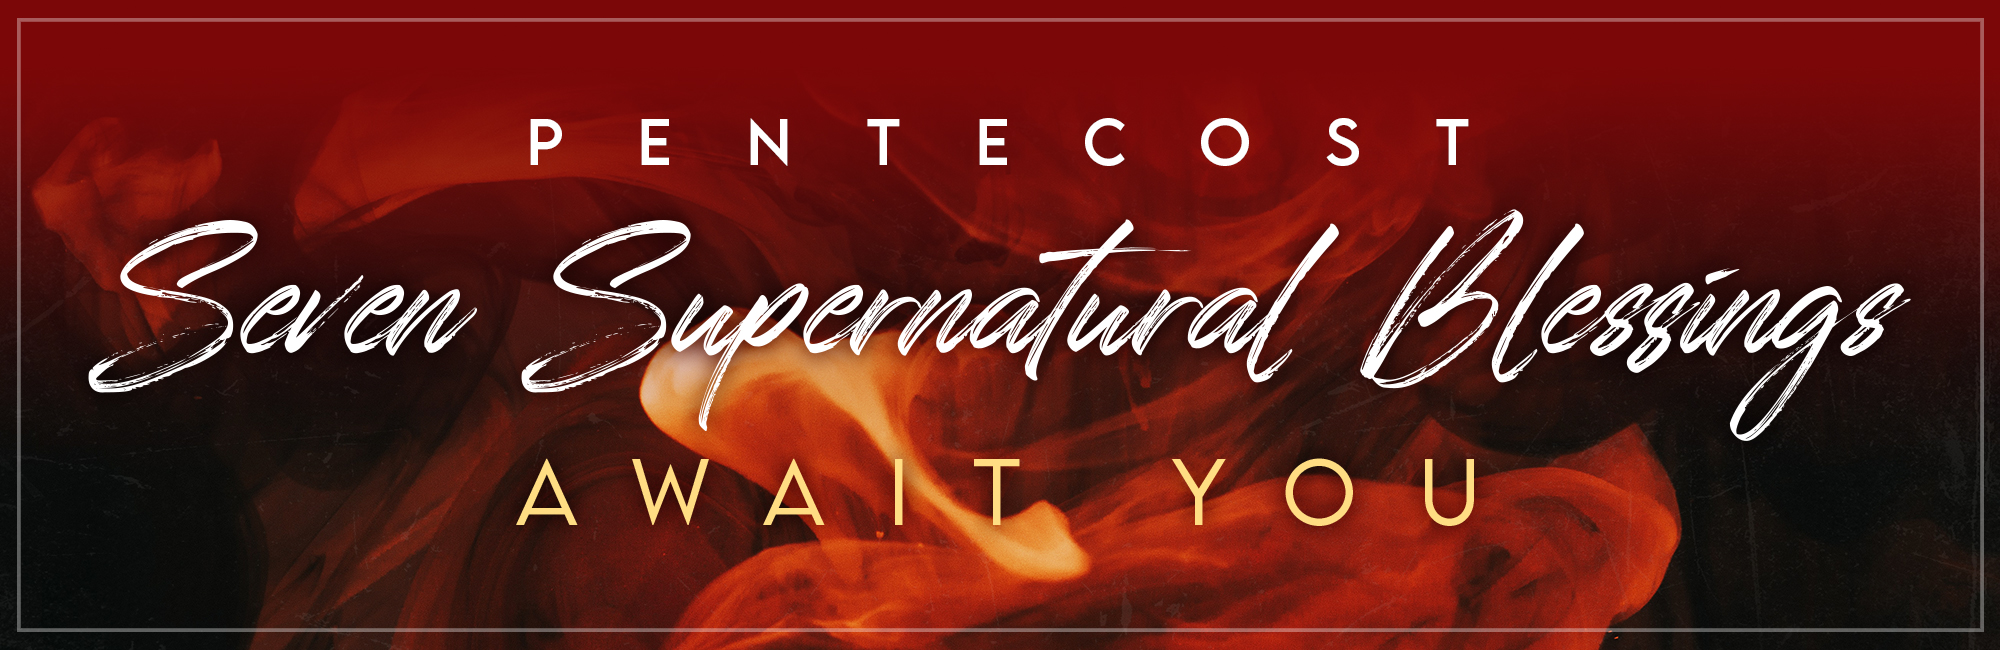 Pentecost Seven Supernatural Blessings Await You